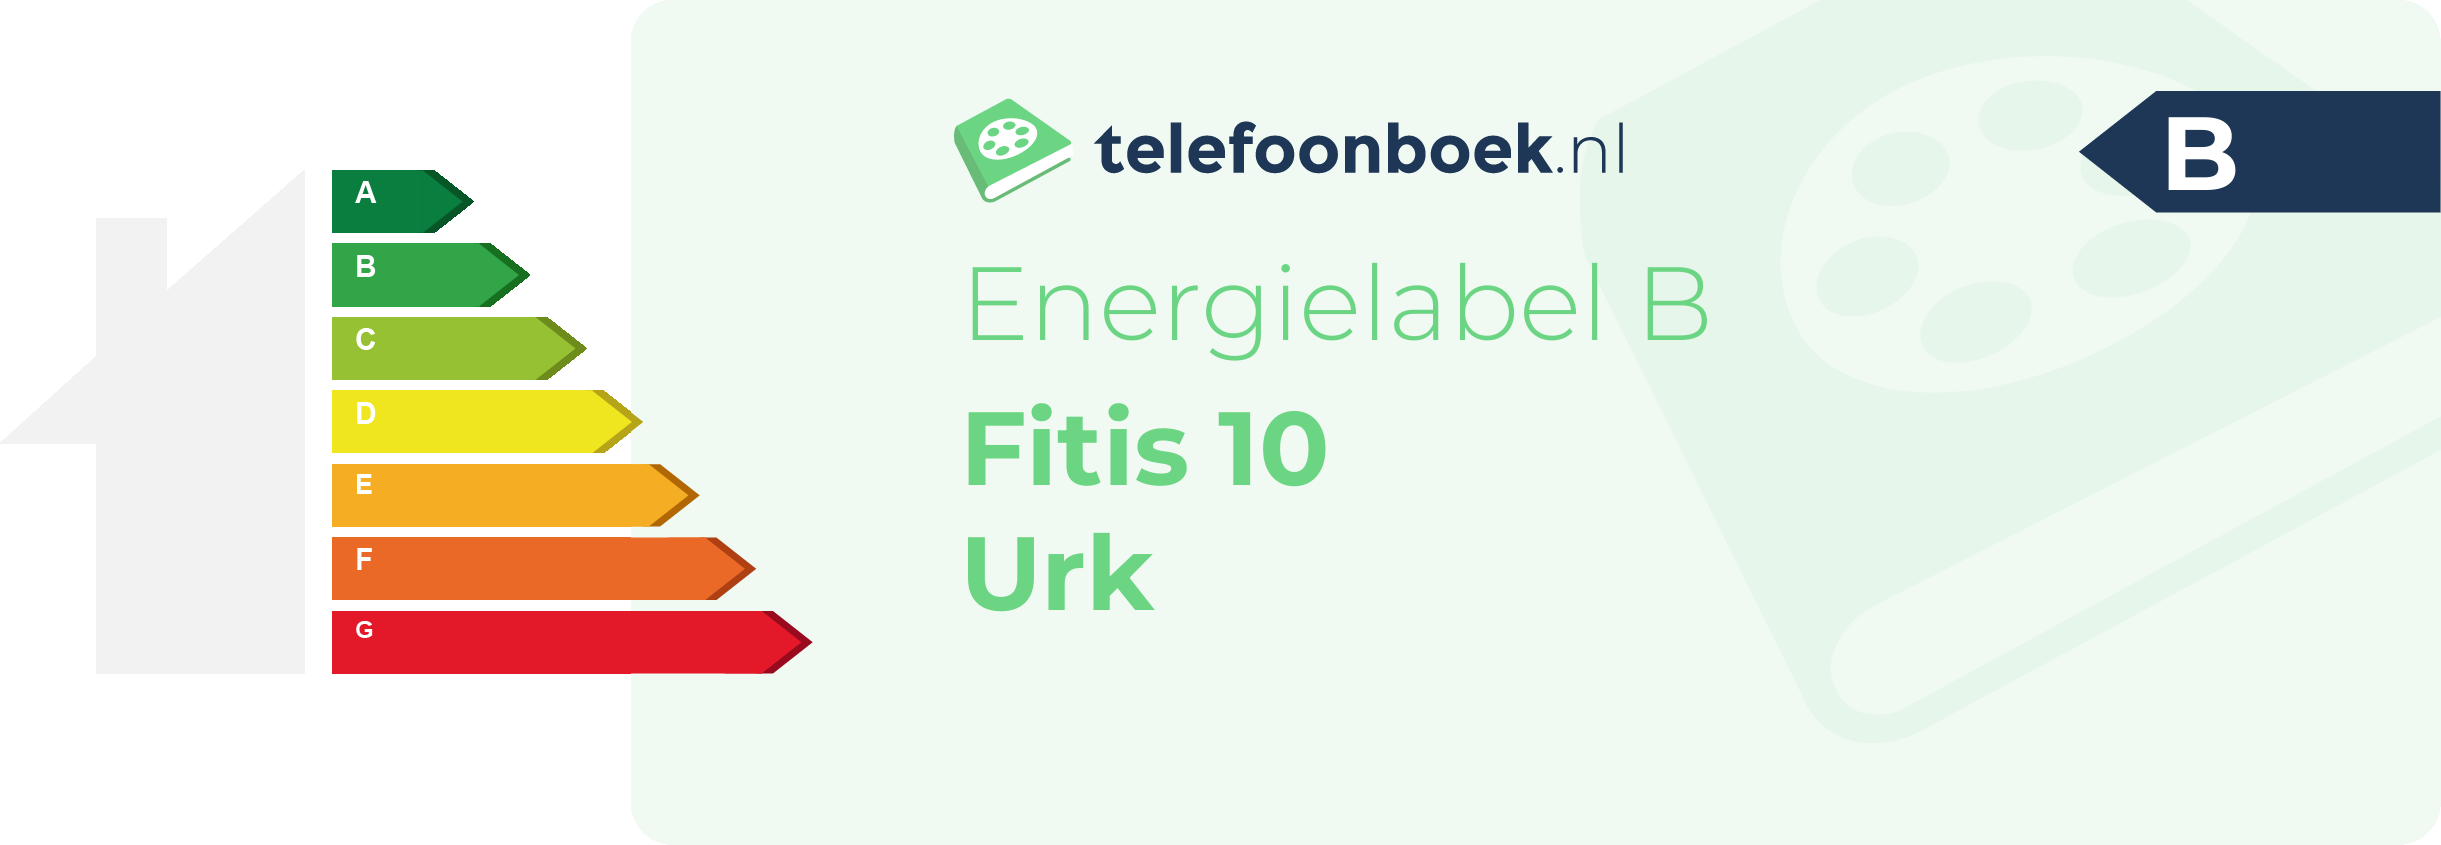 Energielabel Fitis 10 Urk